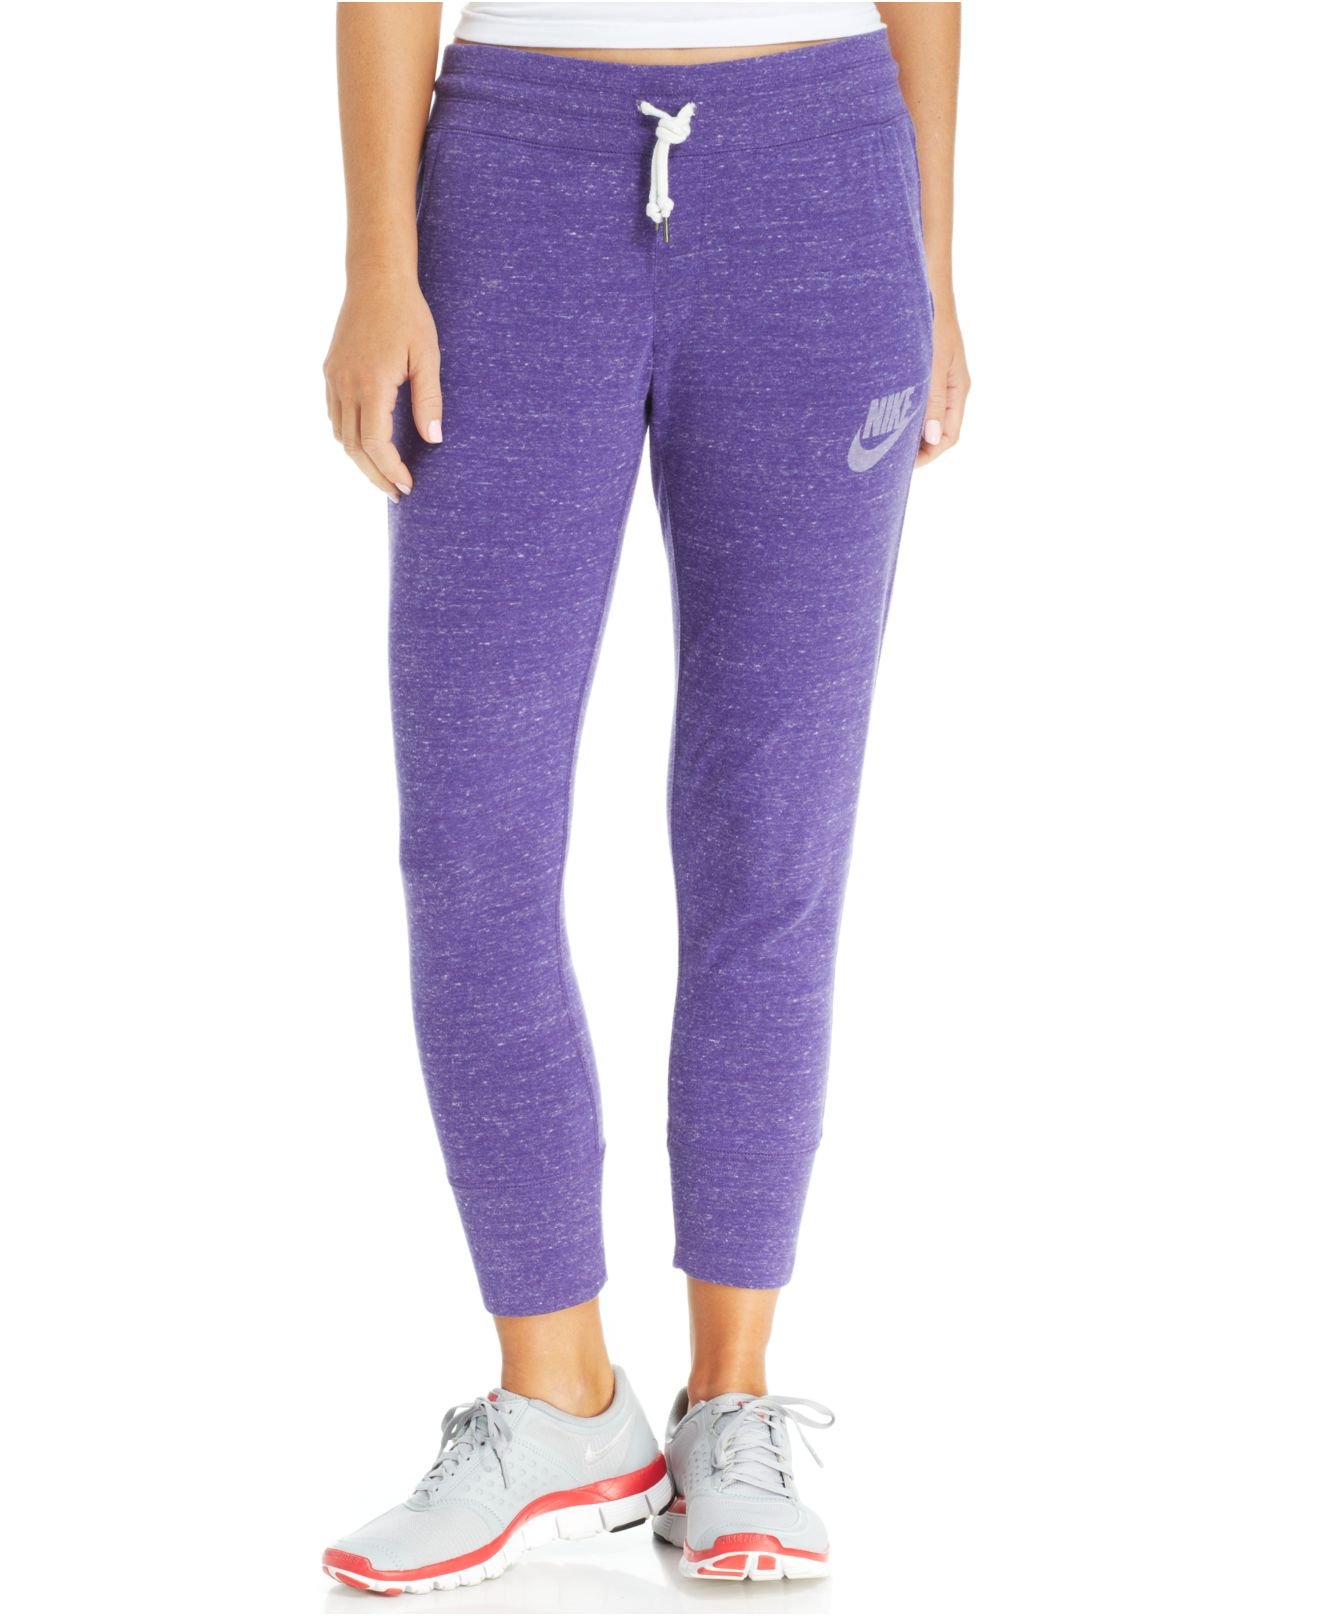 Lyst - Nike Gym Vintage Capri Sweatpants in Purple